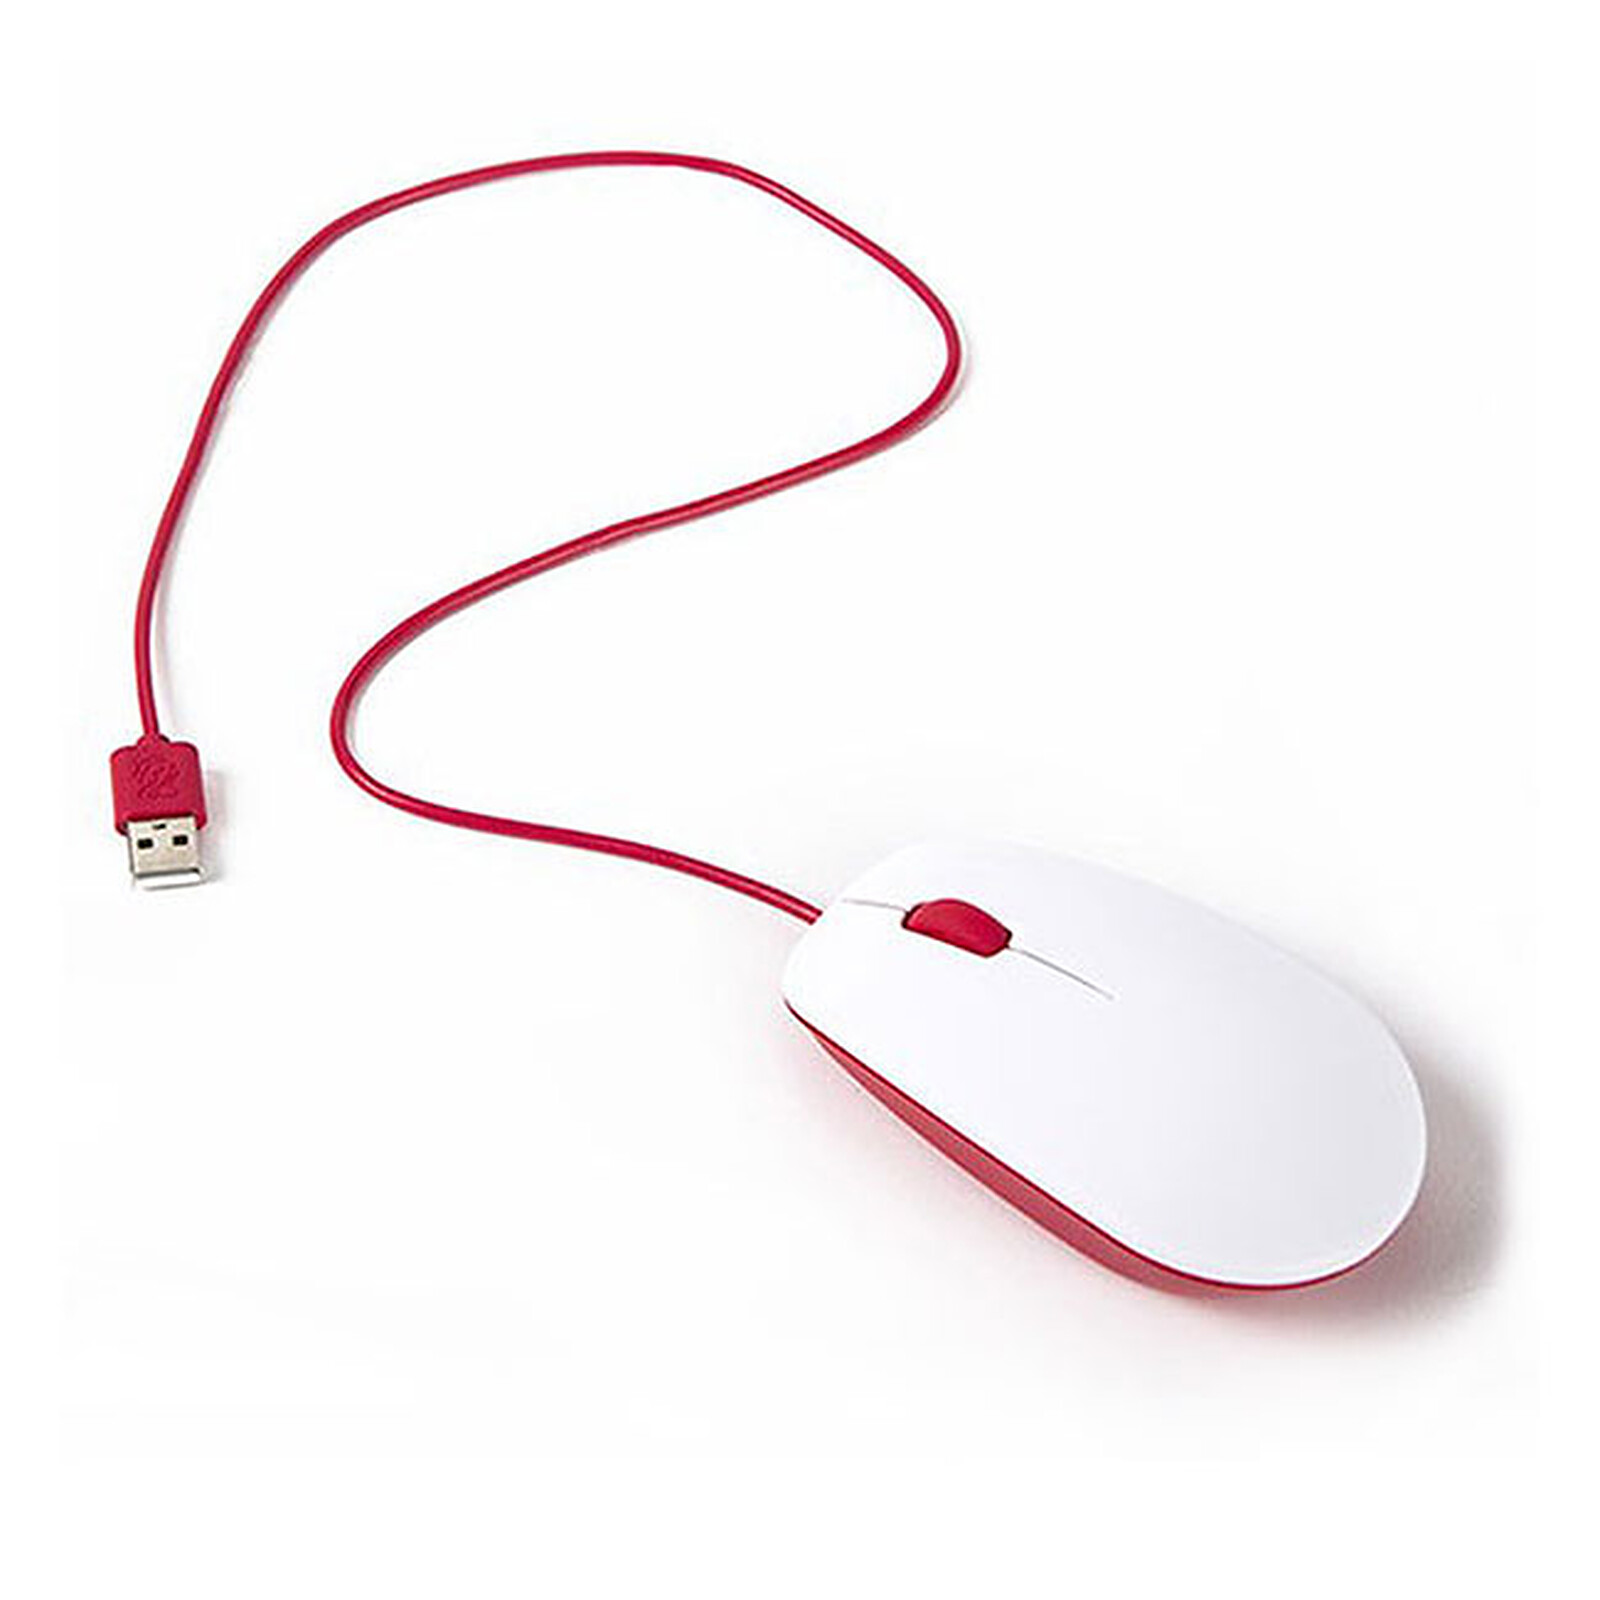 Raspberry Alimentation secteur USB-C 5V 3A Blanc - Accessoires